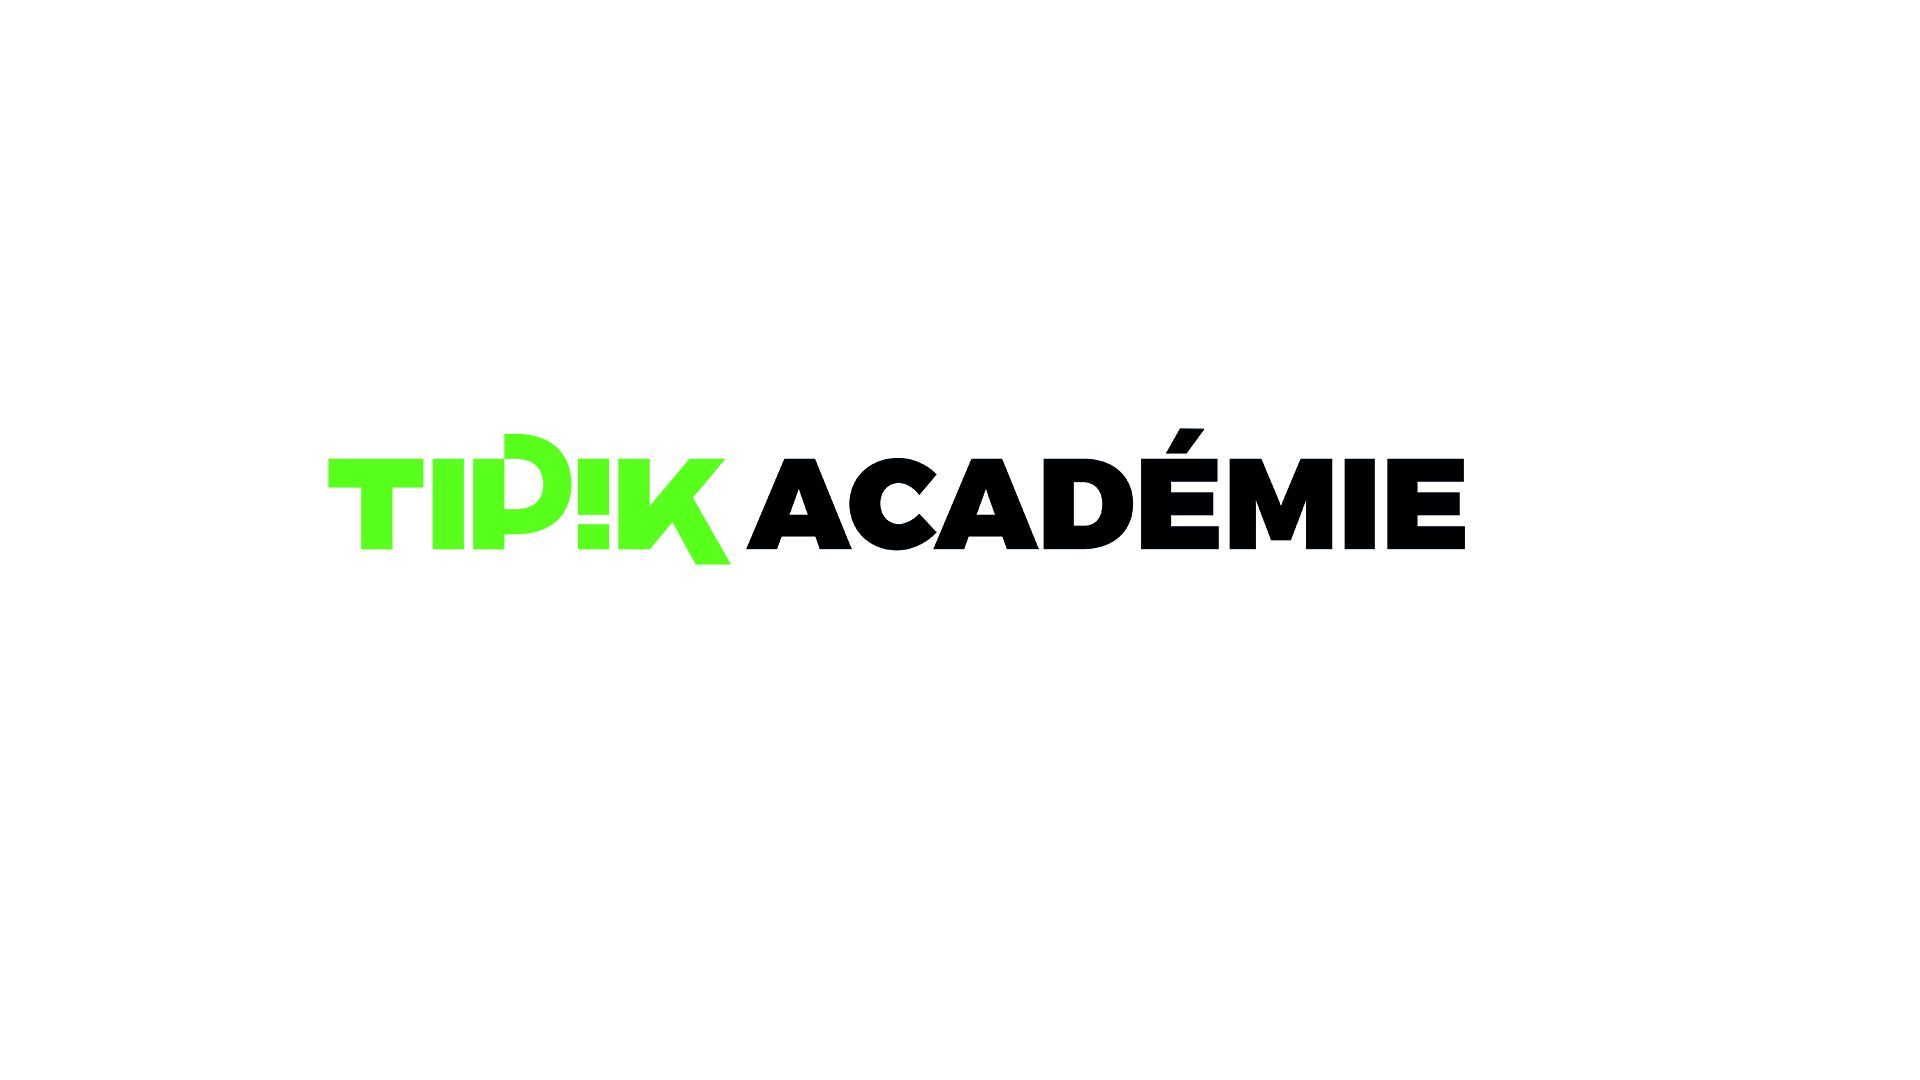 Soyez le premier à recevoir le label Tipik Académie : Tipik recrute des stagiaires